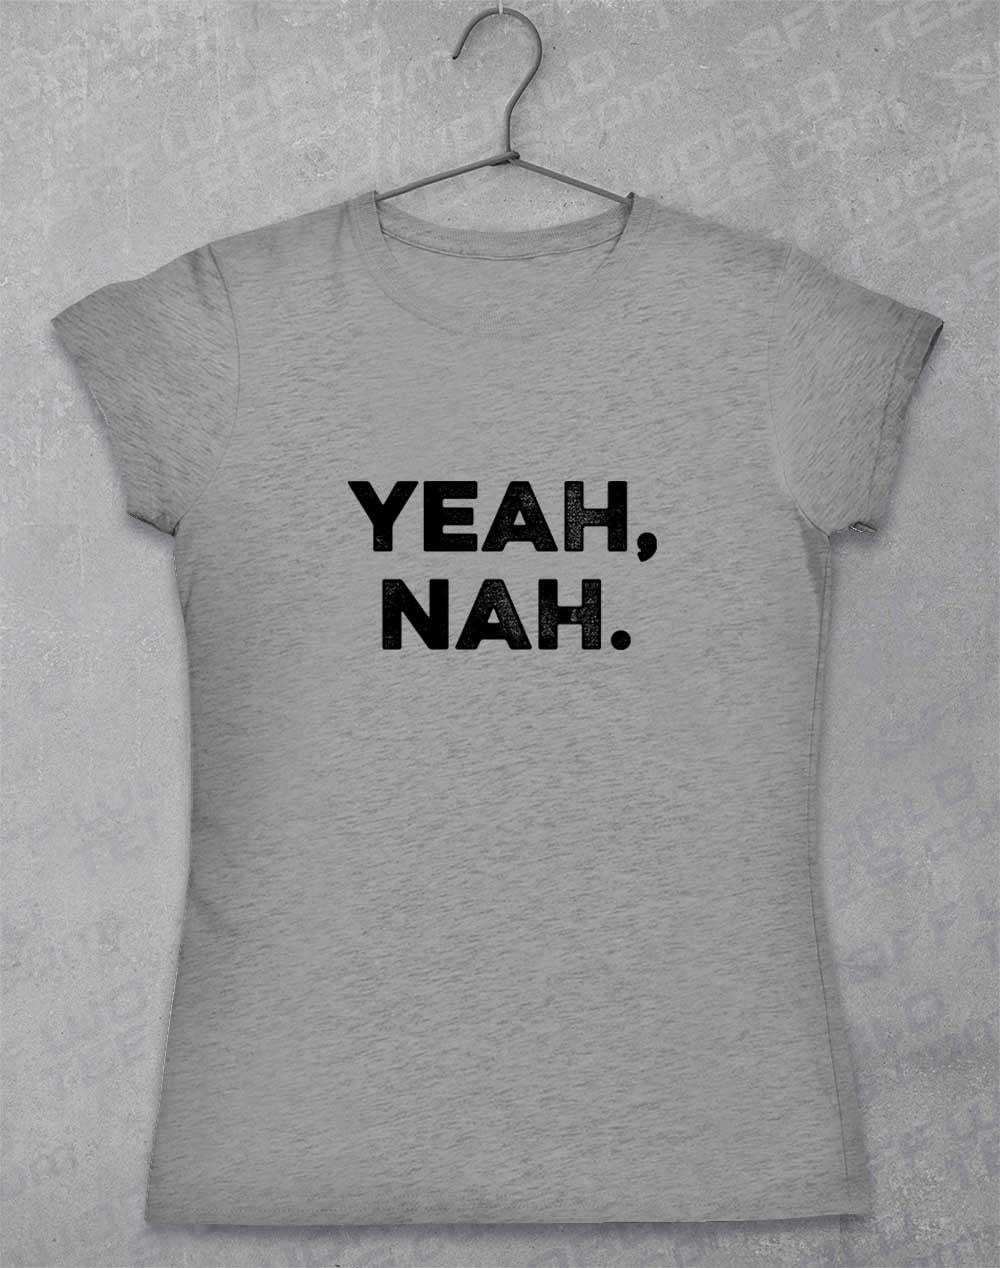 Sport Grey - Yeah Nah Women's T-Shirt